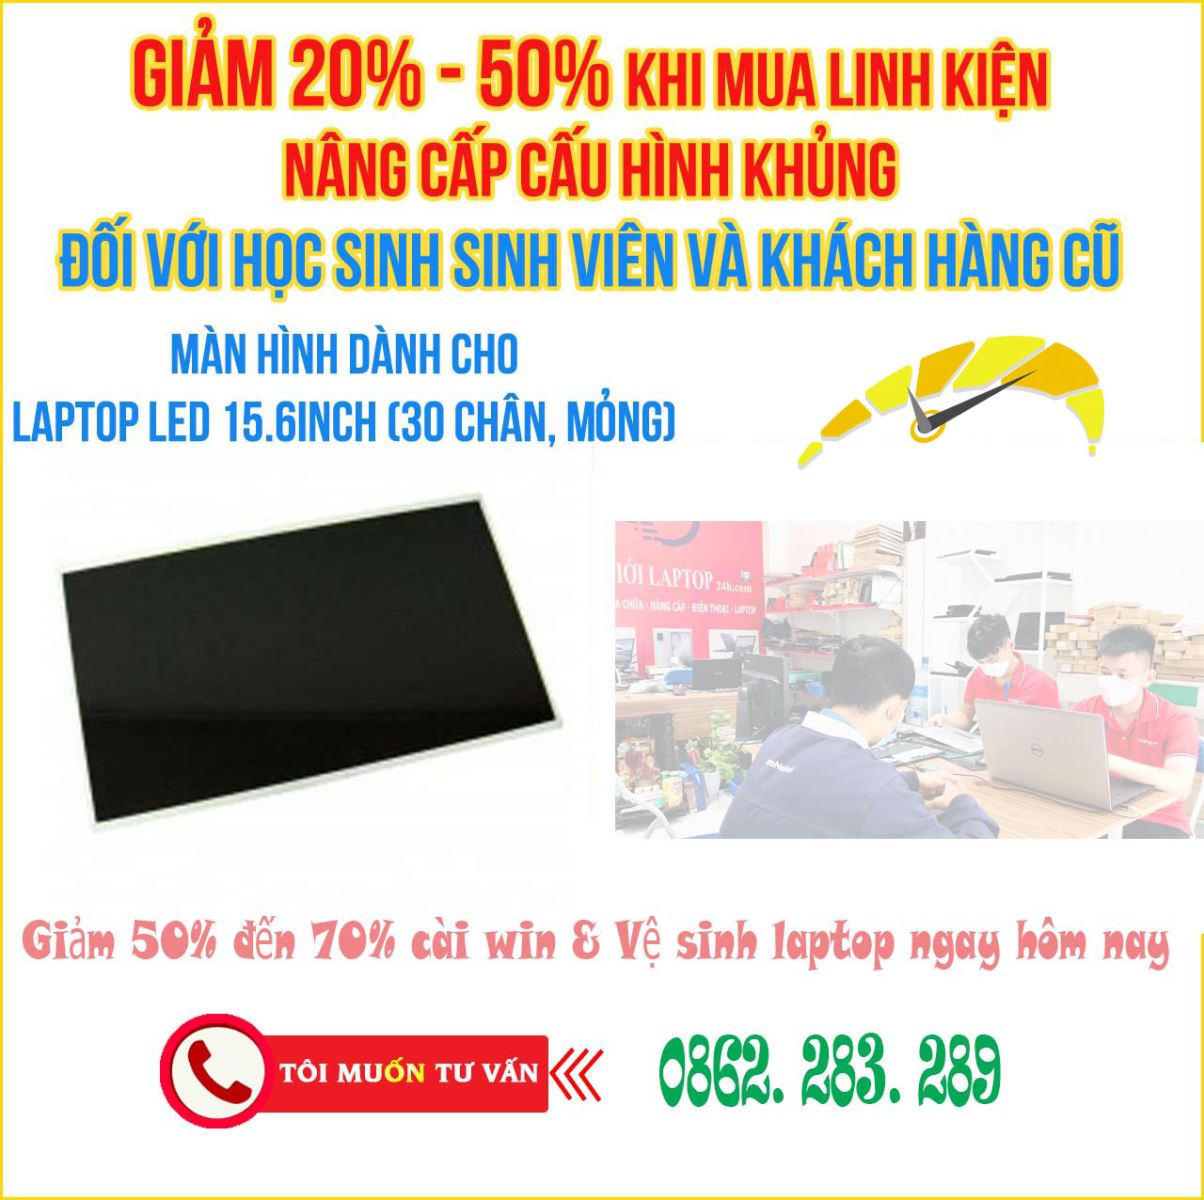 Thay pin laptop giá rẻ quận Phú Nhuận